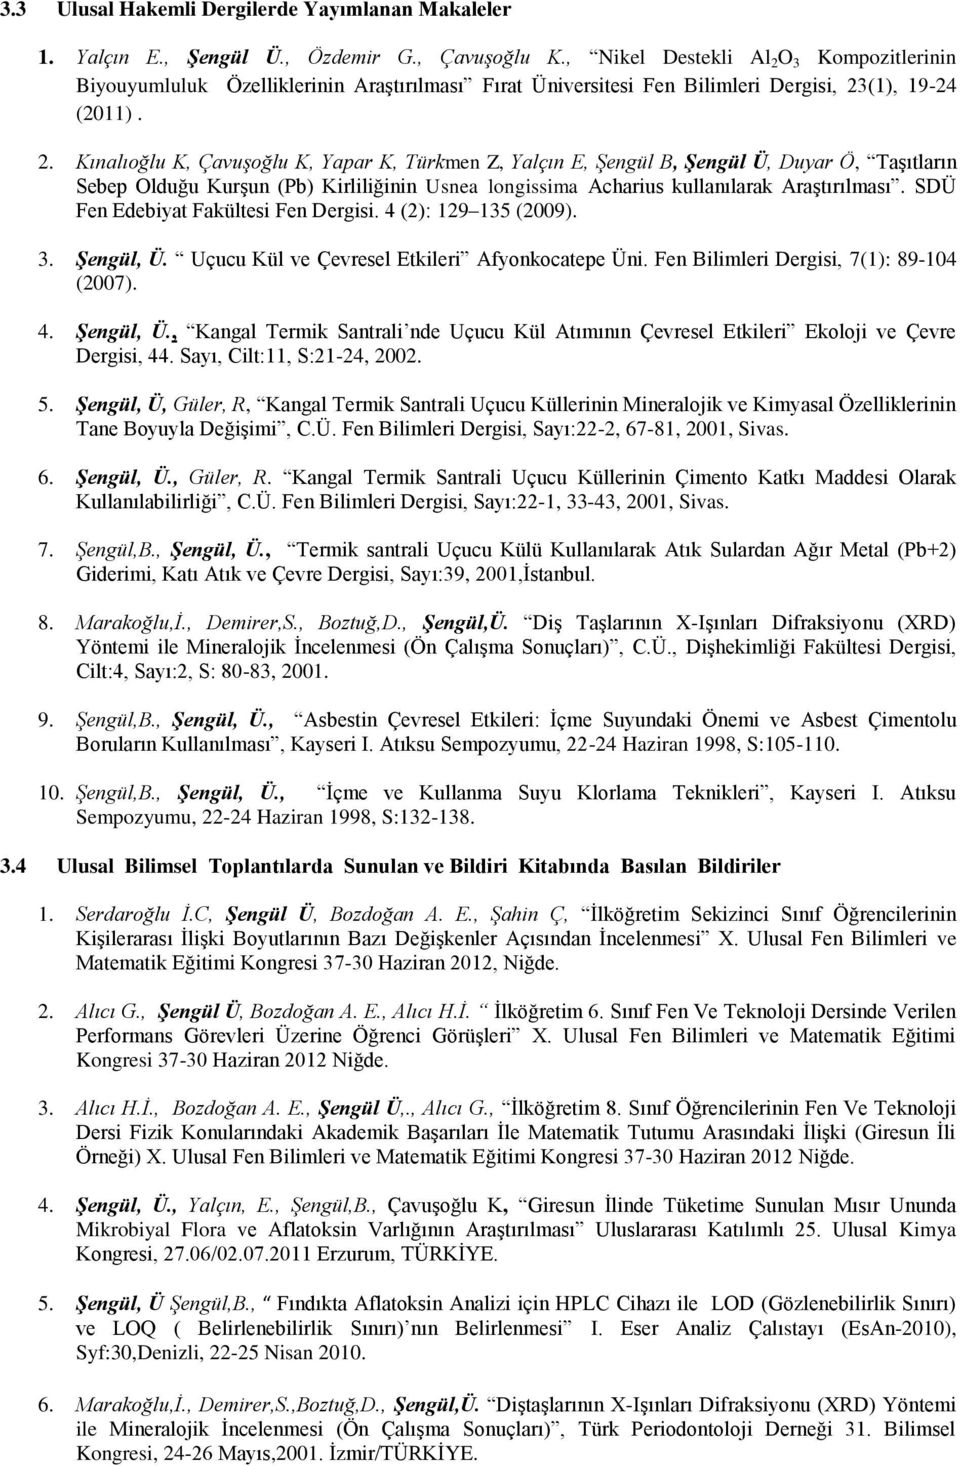 O 3 Kompozitlerinin Biyouyumluluk Özelliklerinin Araştırılması Fırat Üniversitesi Fen Bilimleri Dergisi, 23